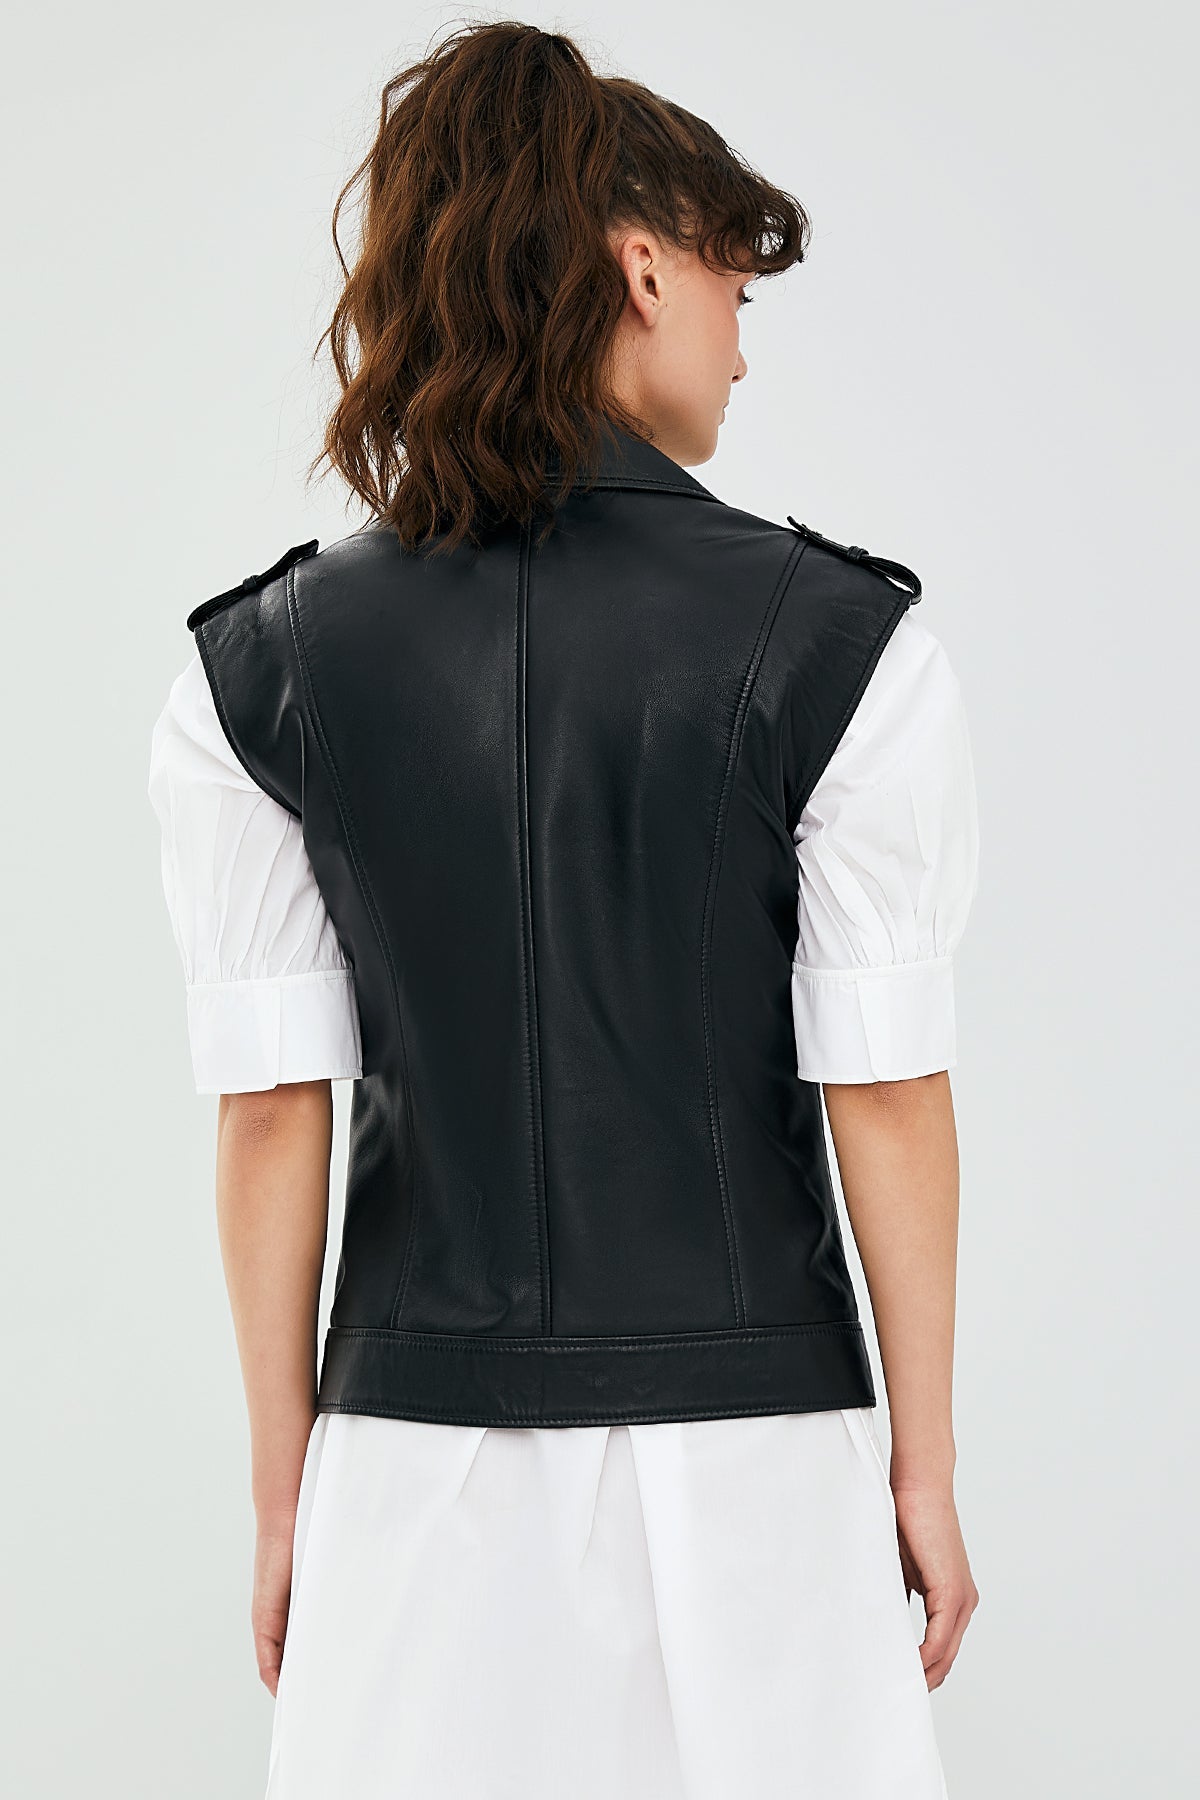 Cuba Women's Black Leather Vest